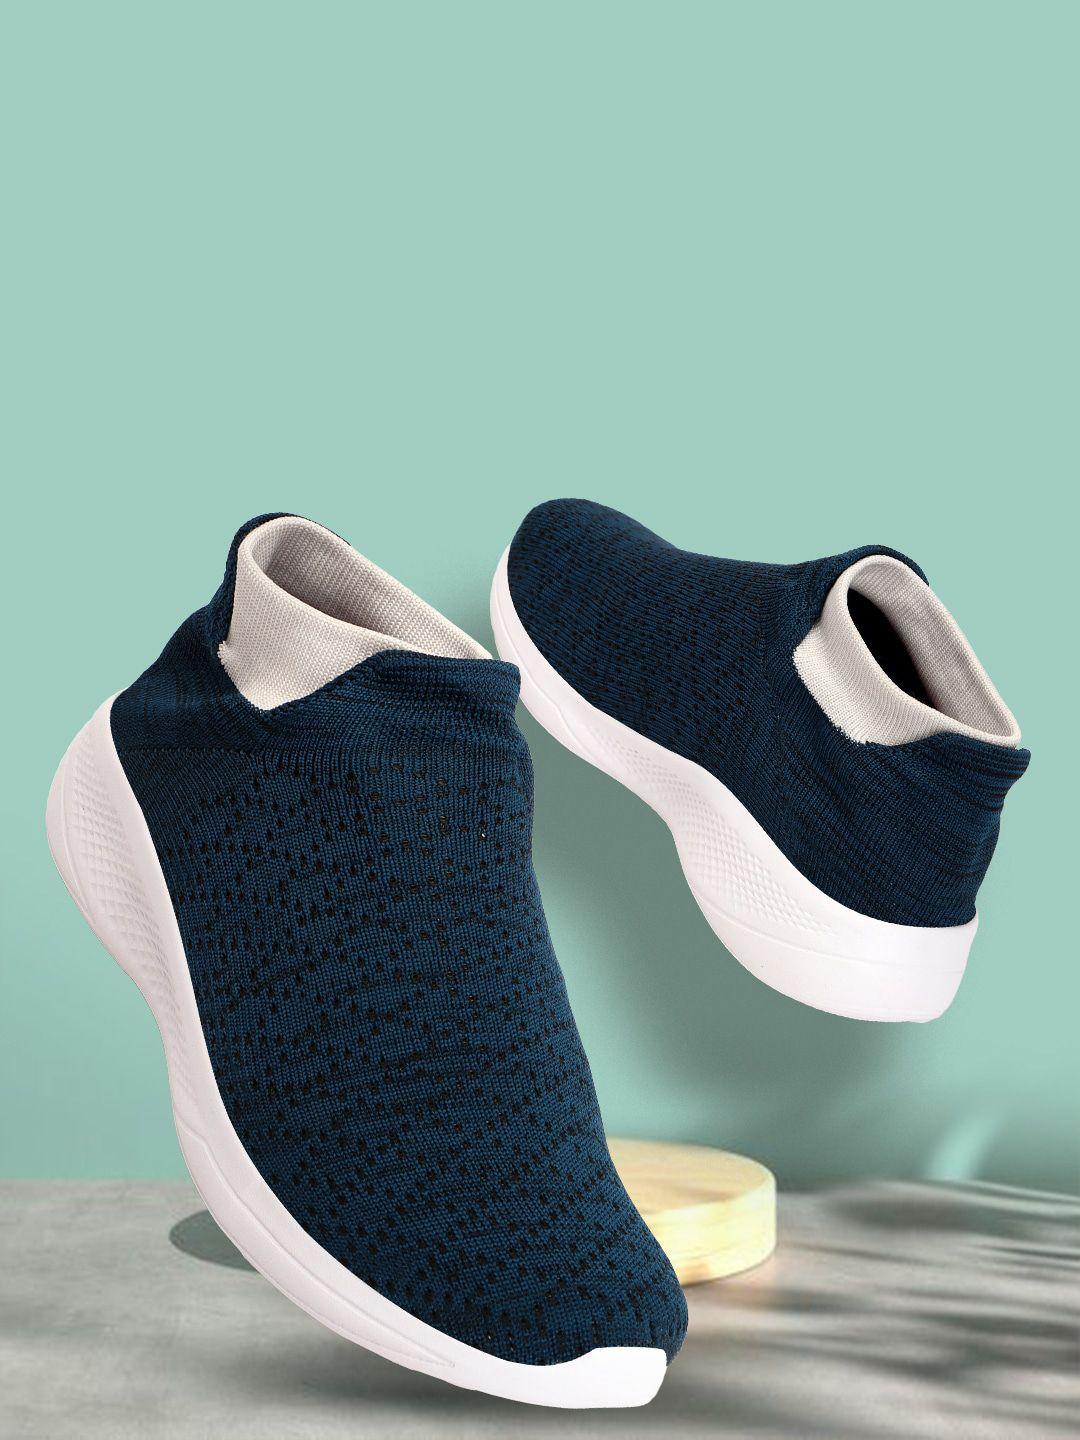 hrx by hrithik roshan men teal blue and white woven design lightweight slip-on sneakers